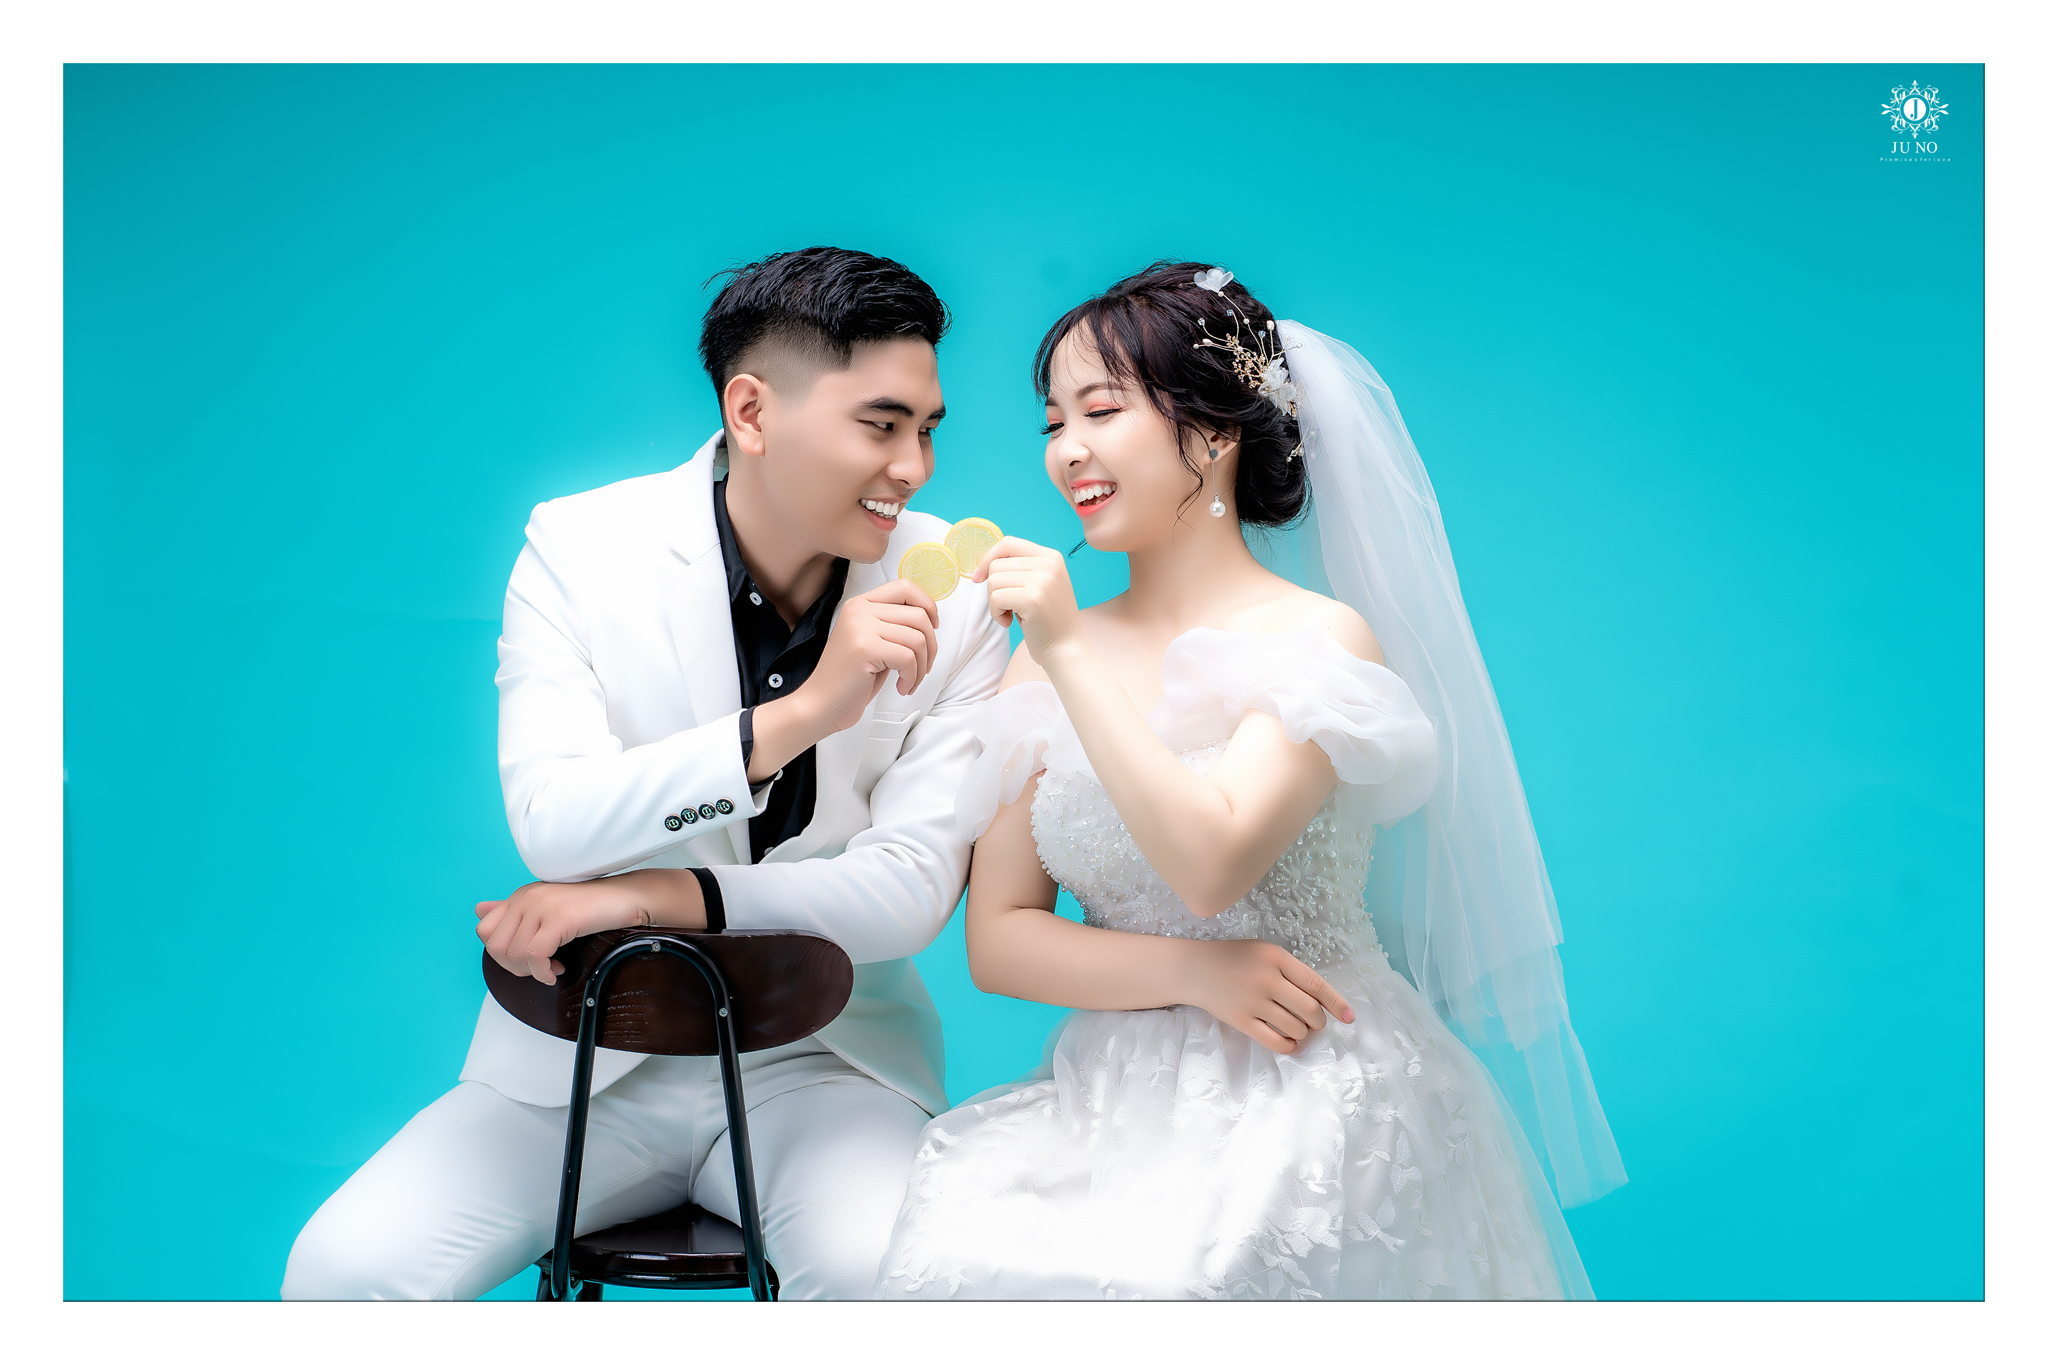 Juno Wedding - cái tên nổi tiếng trong lĩnh vực chụp ảnh cưới tại Hà Nội. Với đội ngũ những nhiếp ảnh chuyên nghiệp và tâm huyết, chúng tôi cam kết đem đến cho bạn những bức ảnh cưới đẹp nhất và chất lượng nhất. Hãy để chúng tôi giúp bạn lưu lại những kí ức đáng nhớ trong ngày trọng đại của mình.